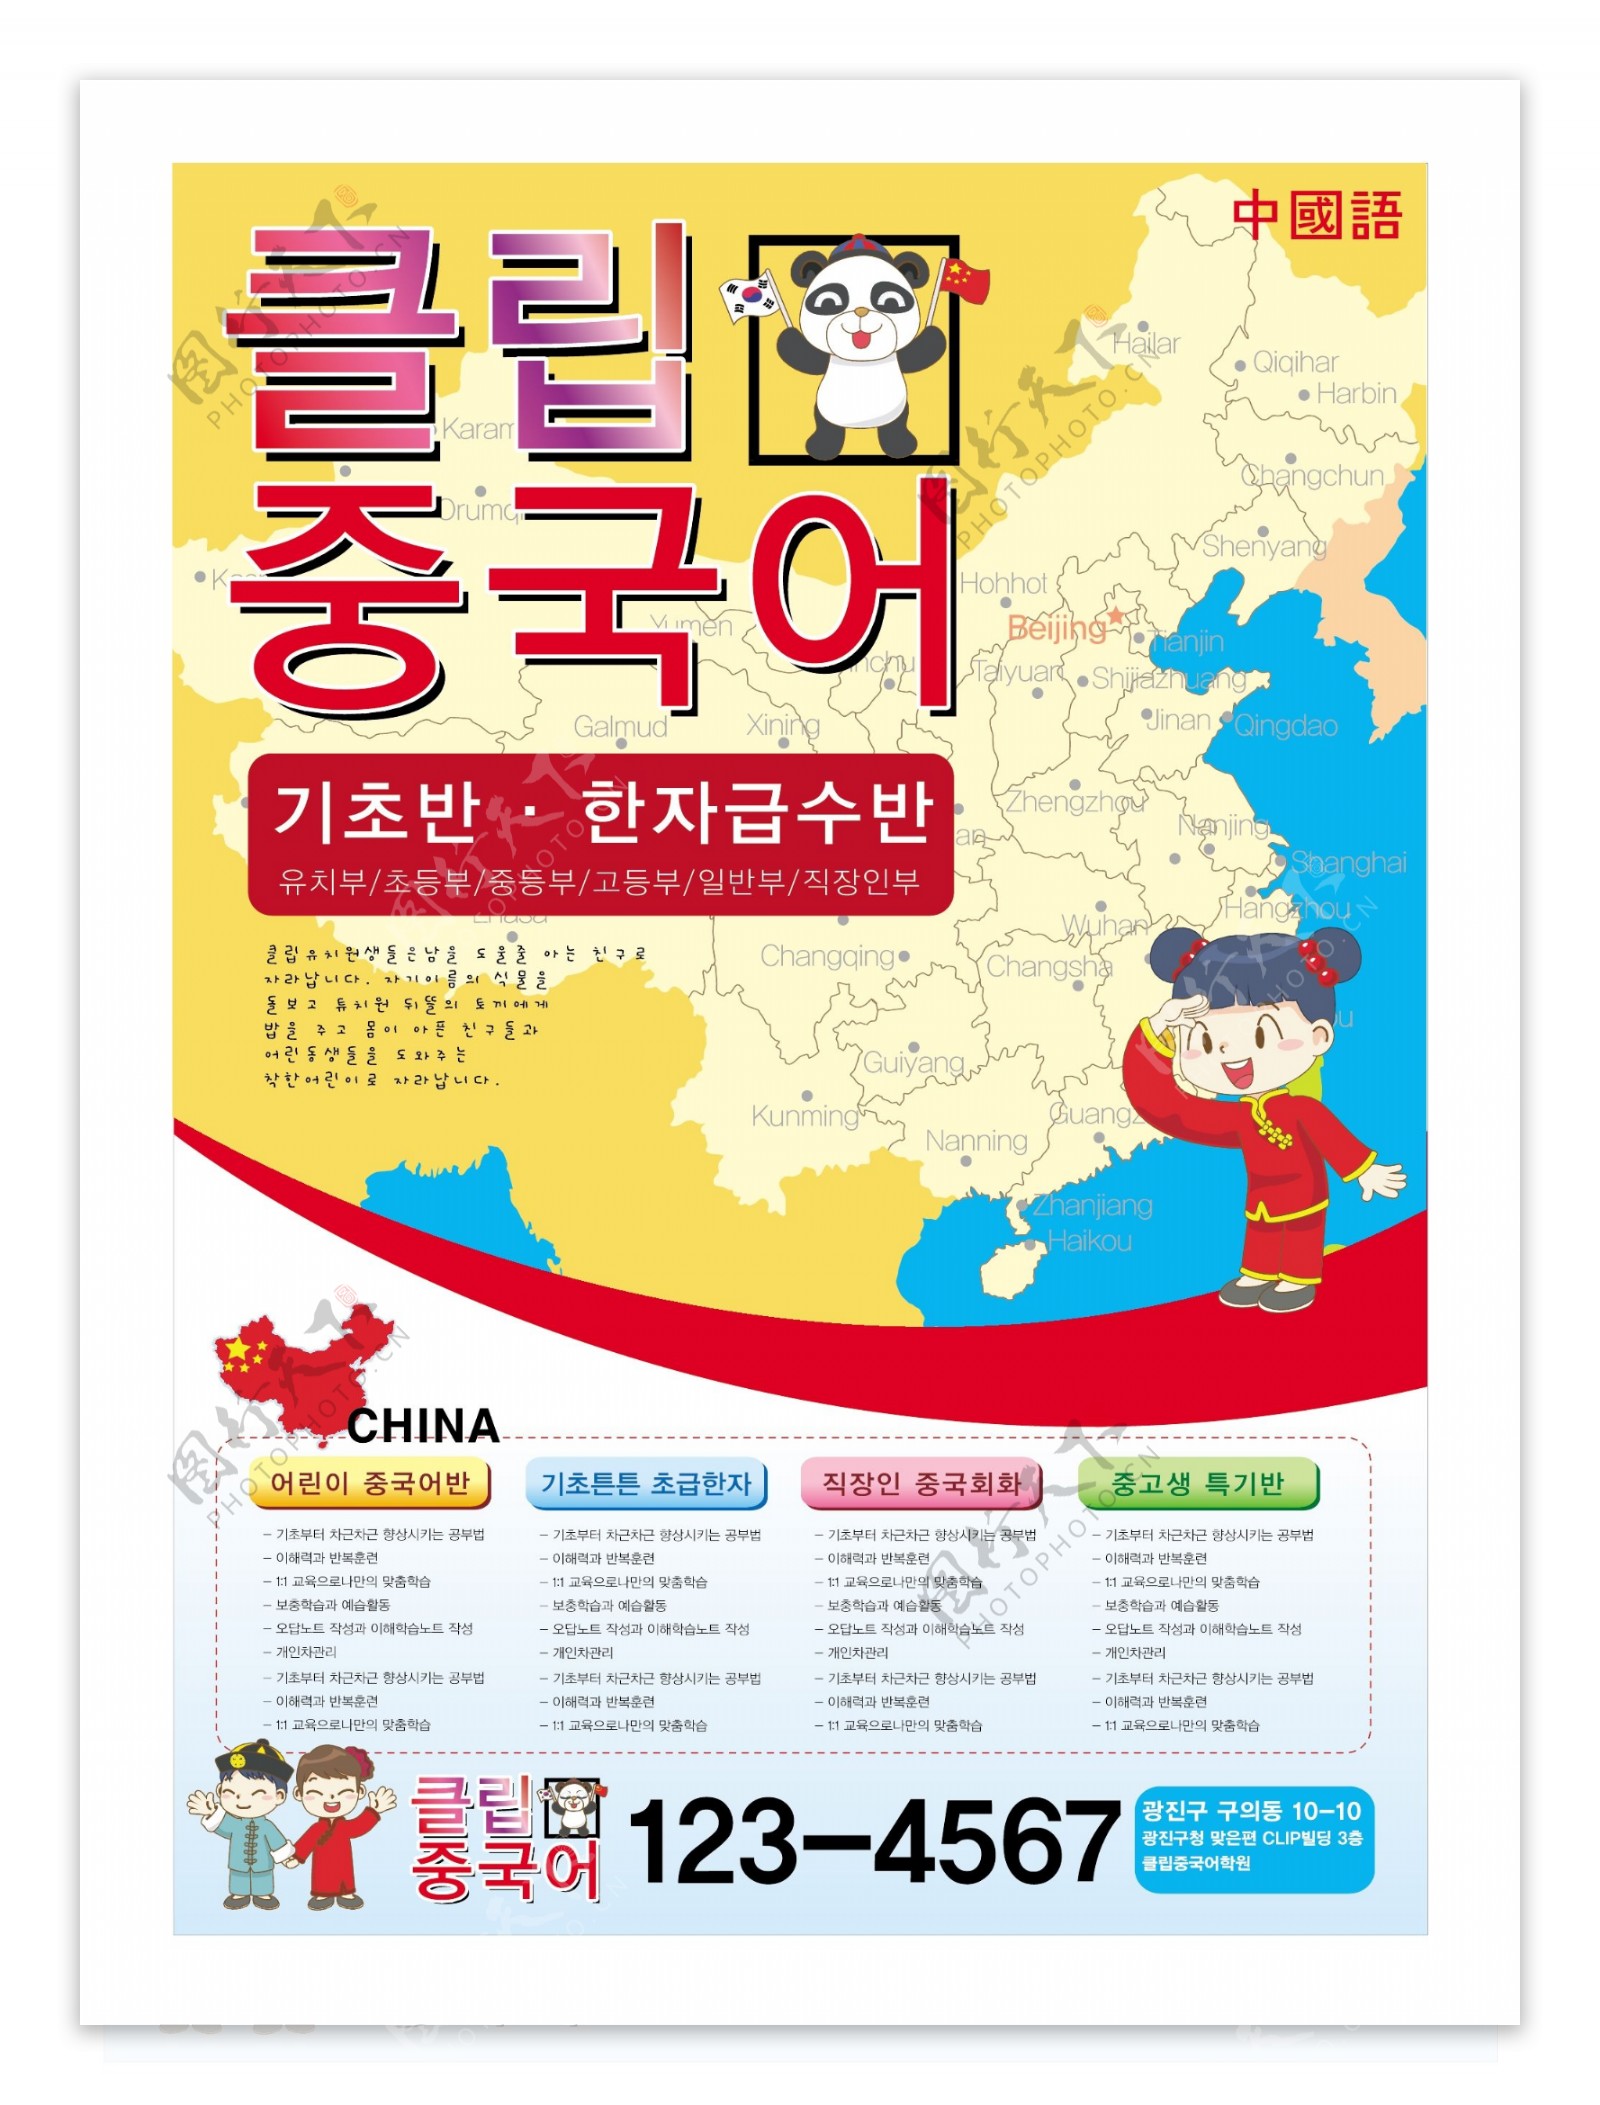 汉语教育海报设计POP韩国矢量素材下载